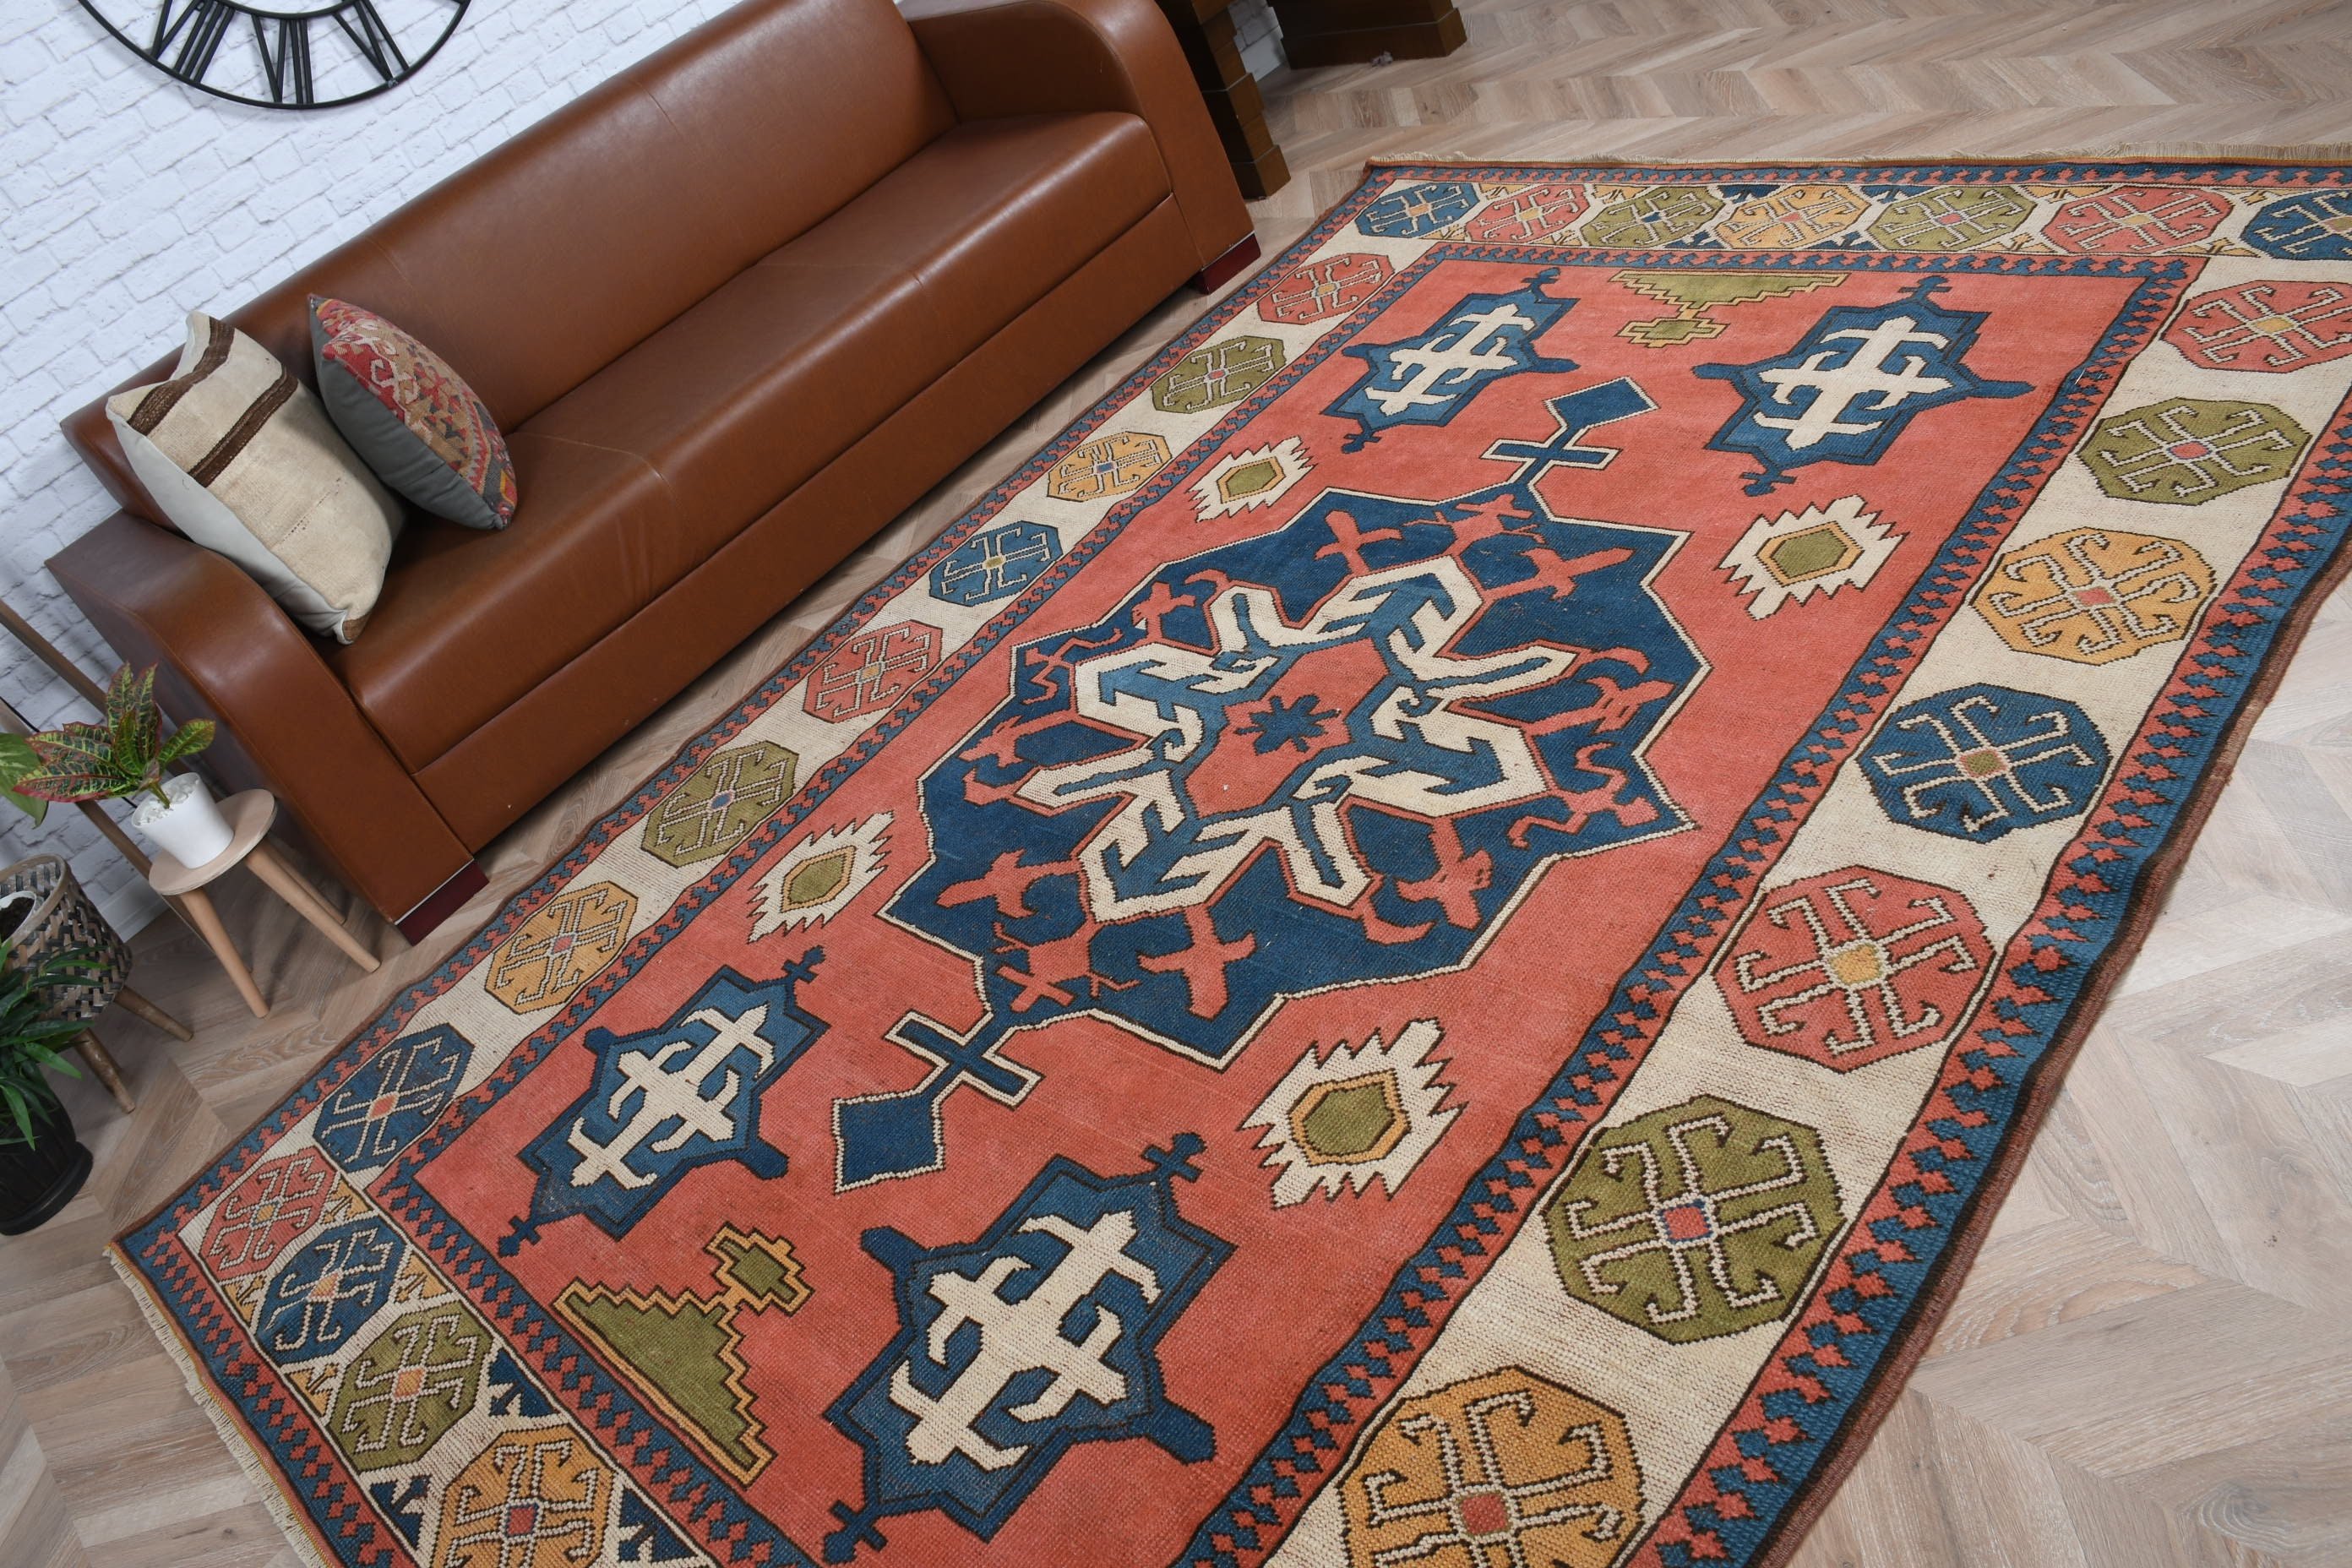 Oriental Rug, Antique Rugs, Vintage Rug, Pink Bedroom Rugs, Boho Rugs, Living Room Rug, 6.6x9.4 ft Large Rugs, Turkish Rug, Dining Room Rug